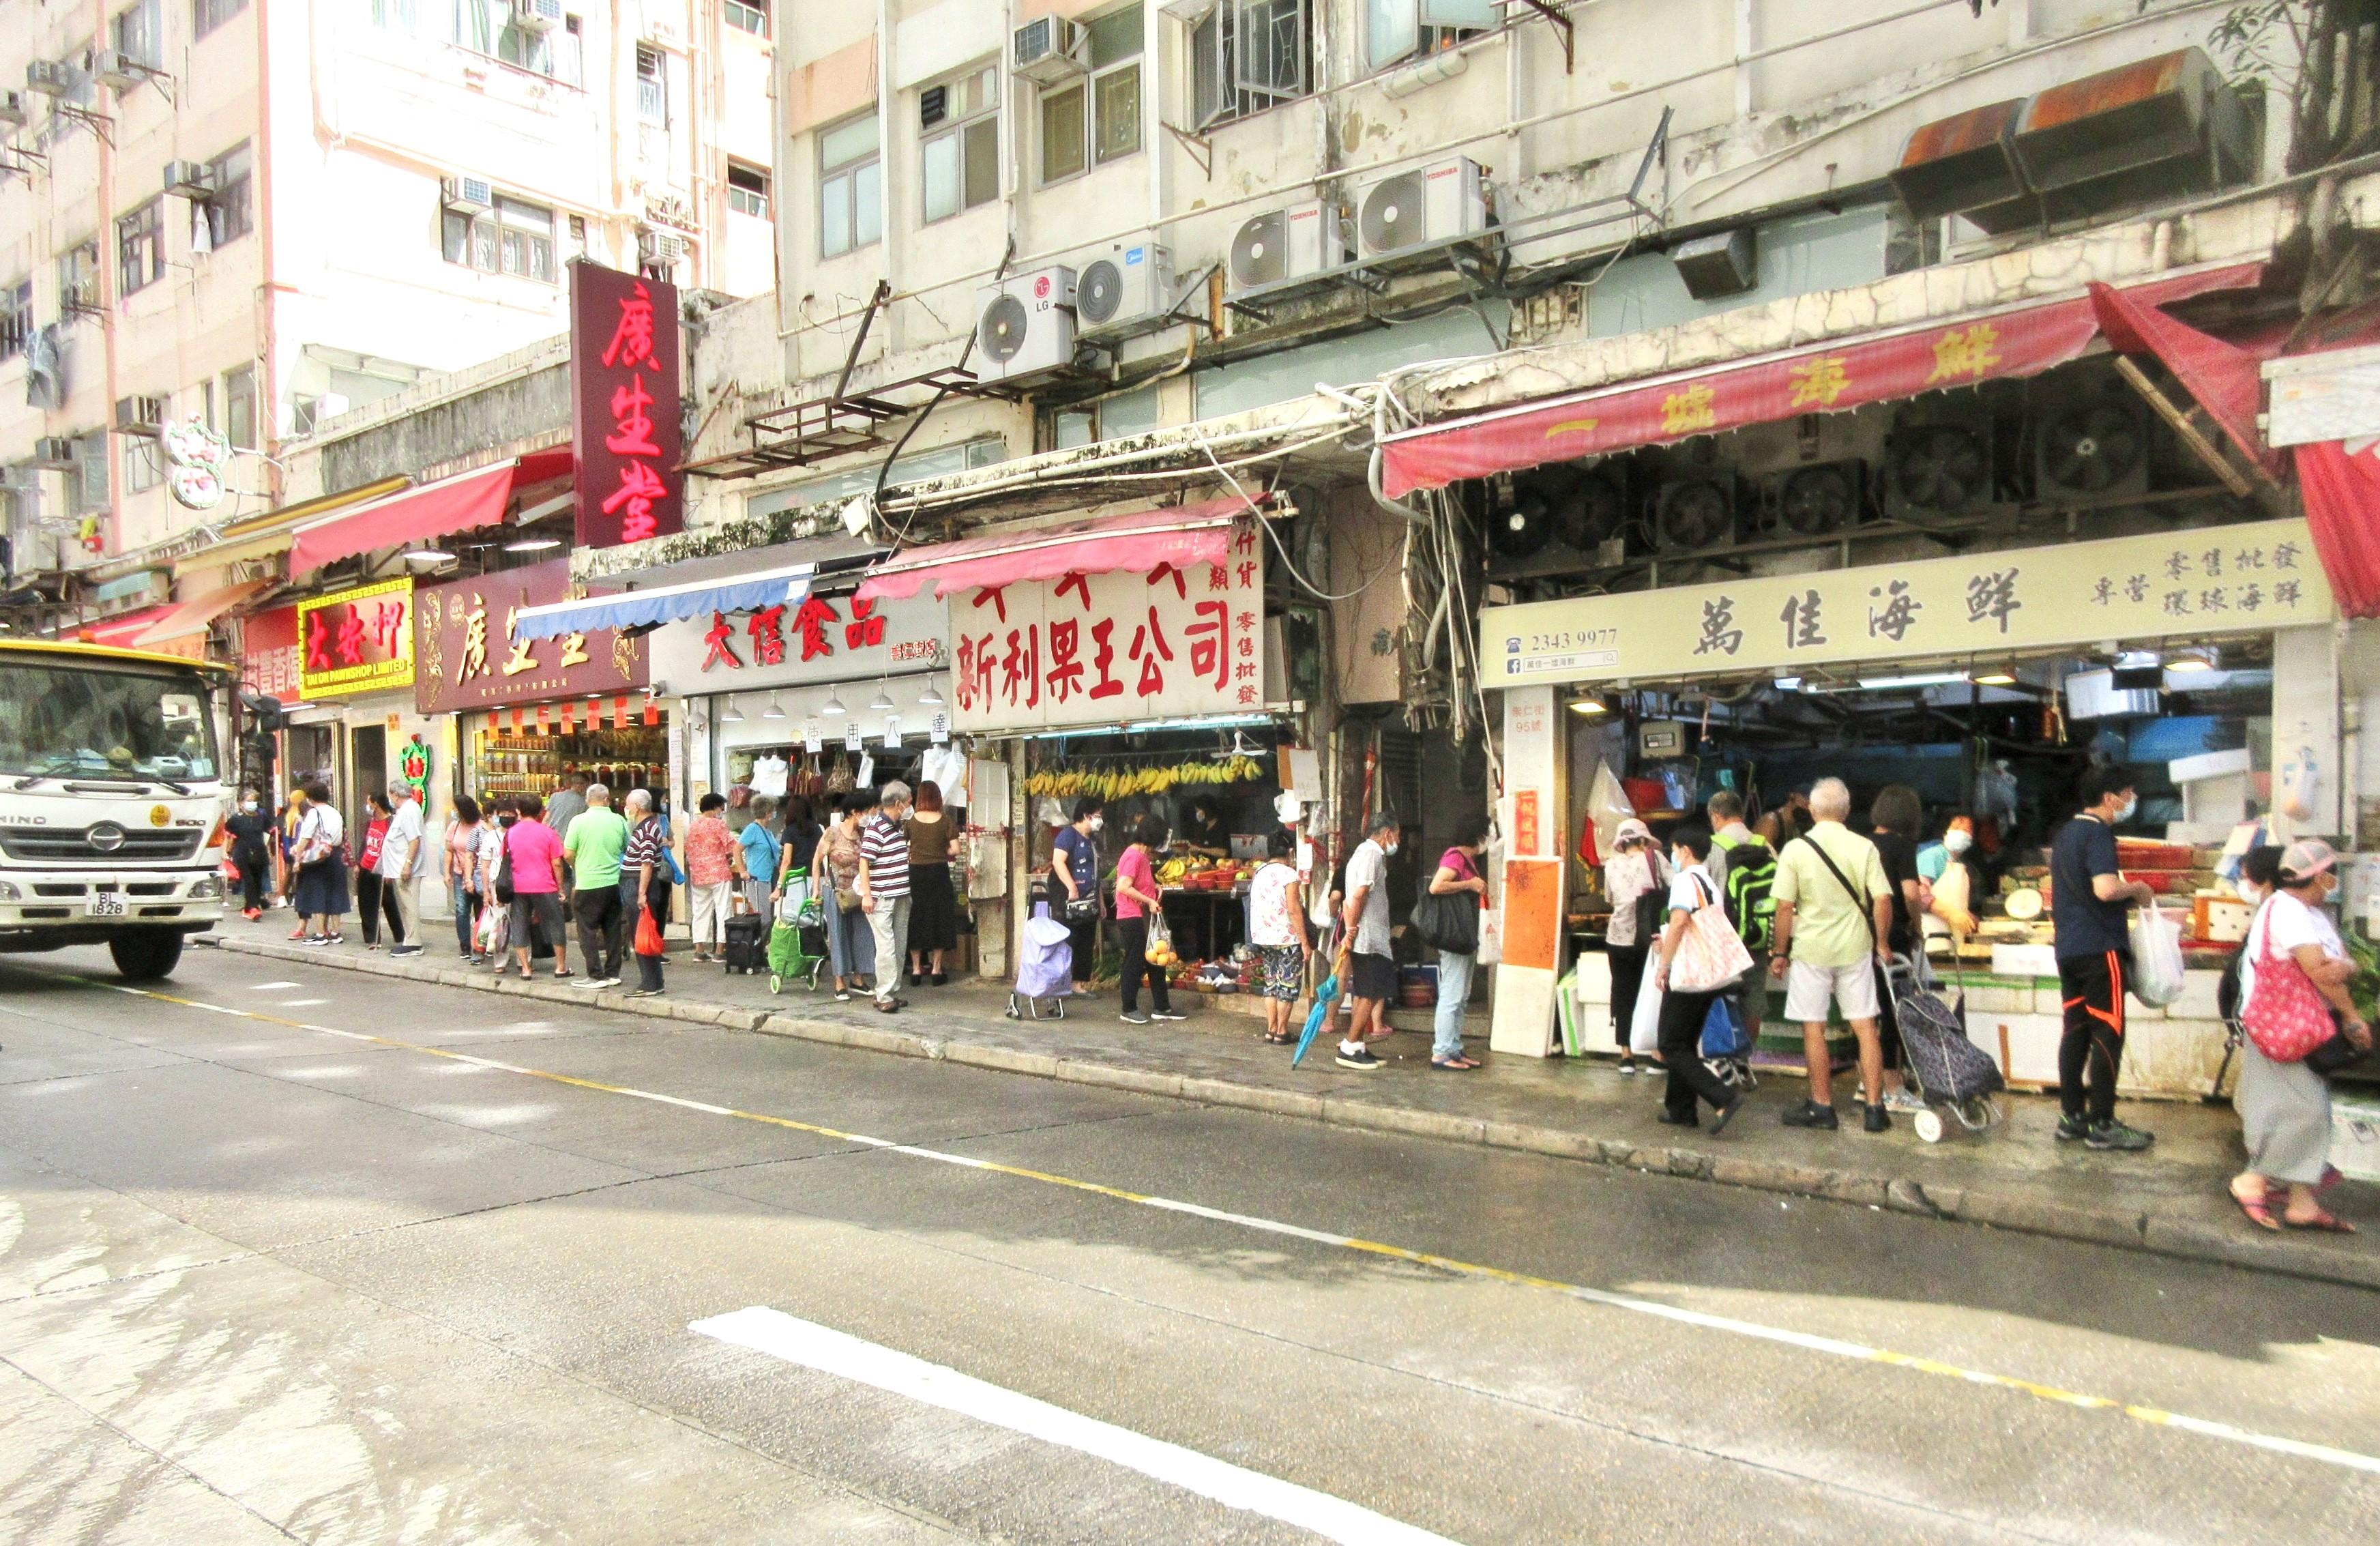 食物環境衞生署與香港警務處自十月三日起先後於各區展開連串嚴厲執法行動打擊非法店鋪阻街活動。圖示觀塘一條街道於昨日（十月七日）聯合行動後的情況。